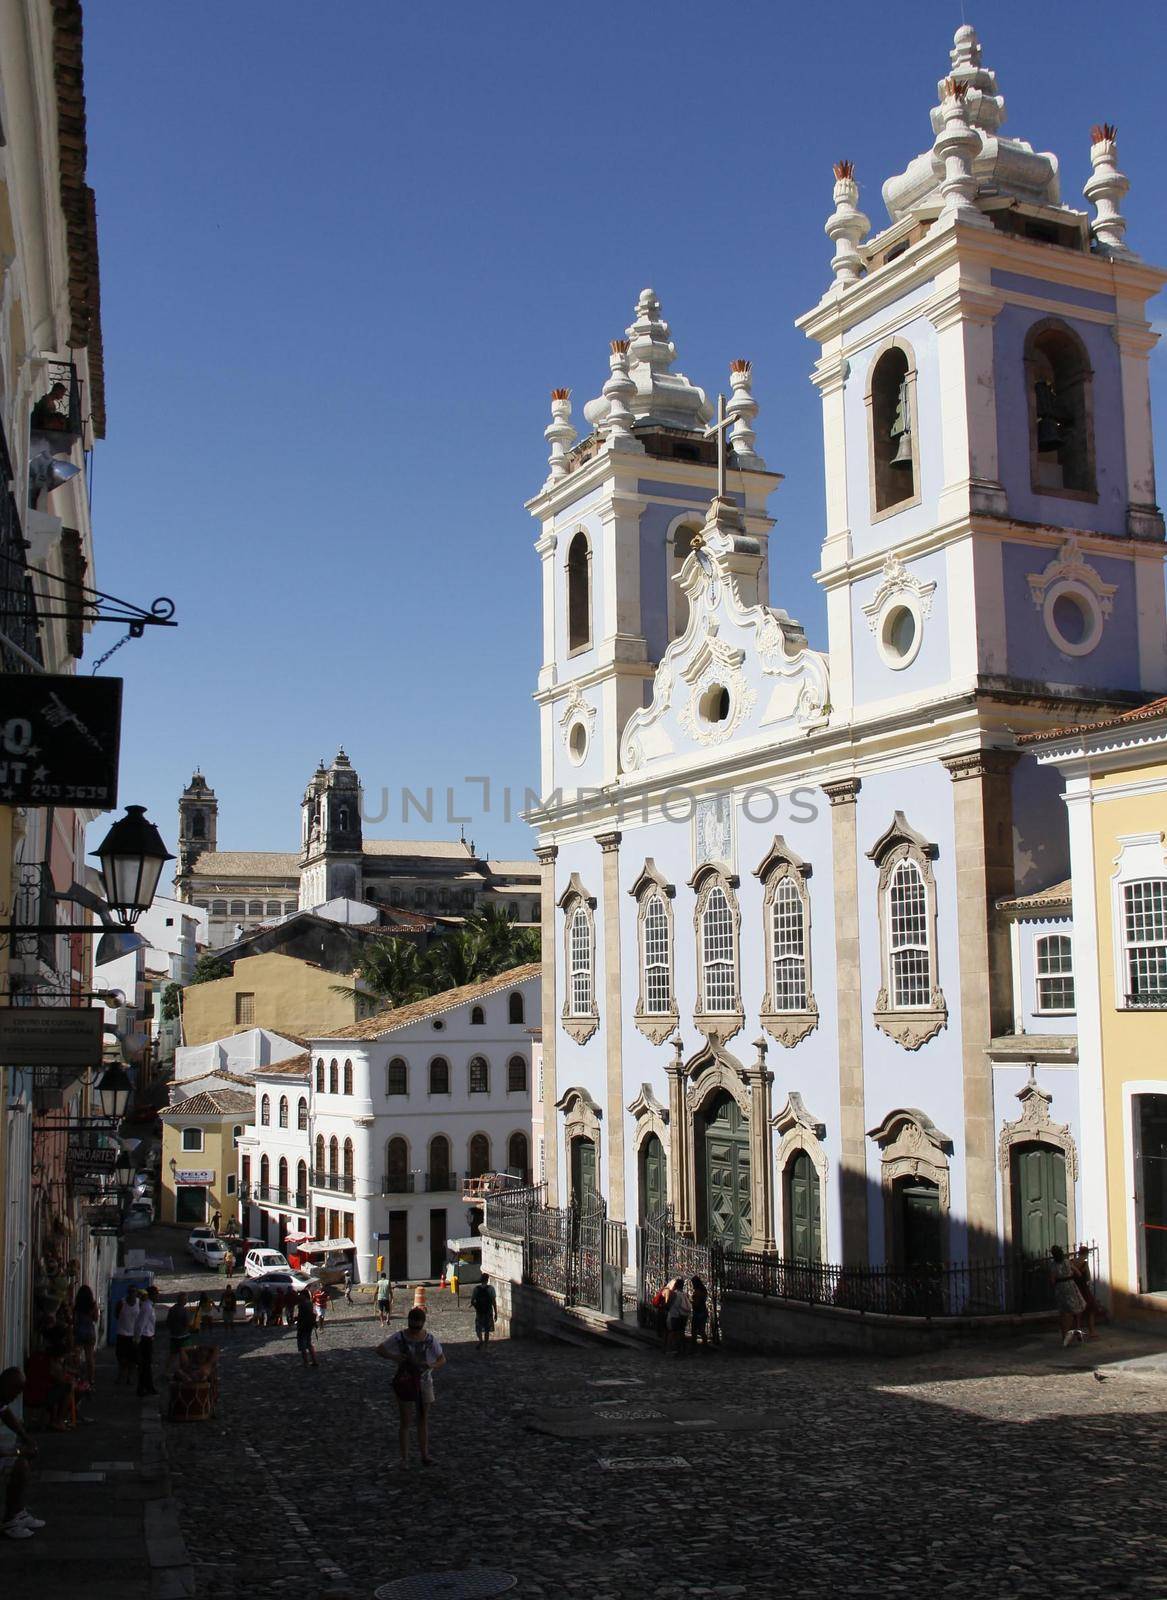 salvador, bahia, brazil - march 28, 2014: view of Pelourinho historic center of Salvador city.